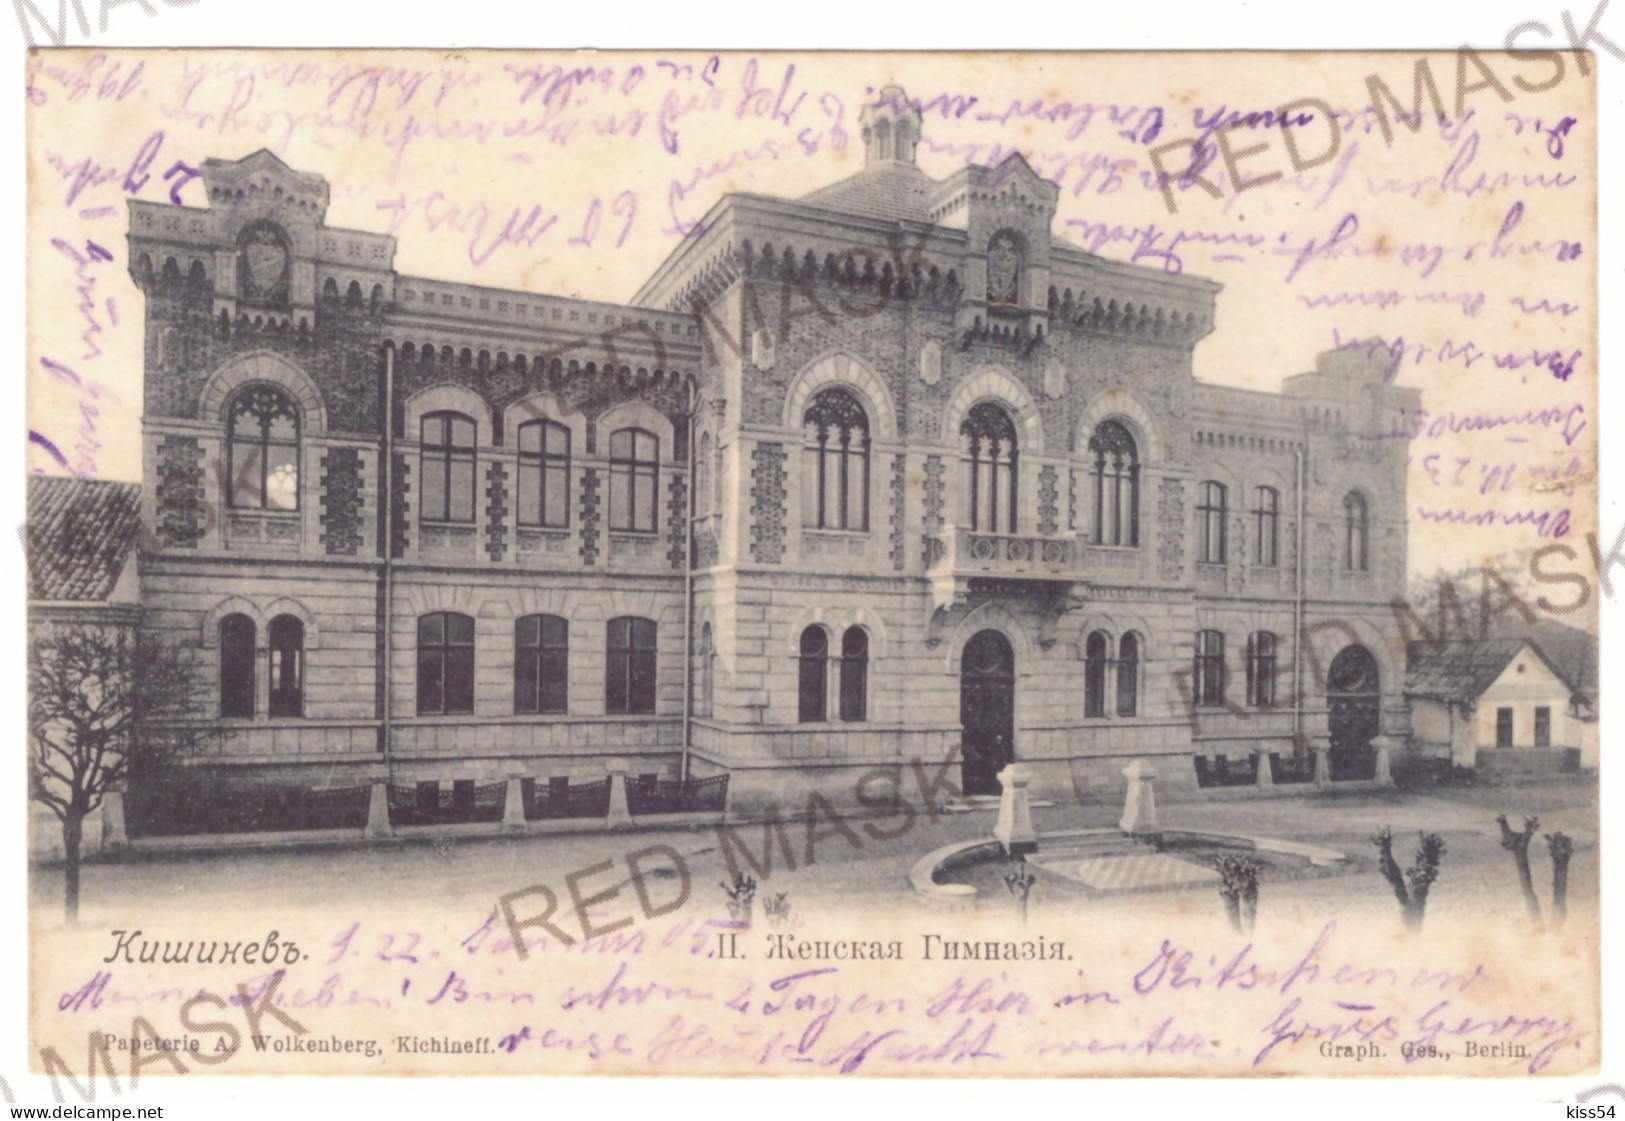 MOL 1 - 20109 CHISINAU, Moldova - Old Postcard - Used - 1905 - Moldavia